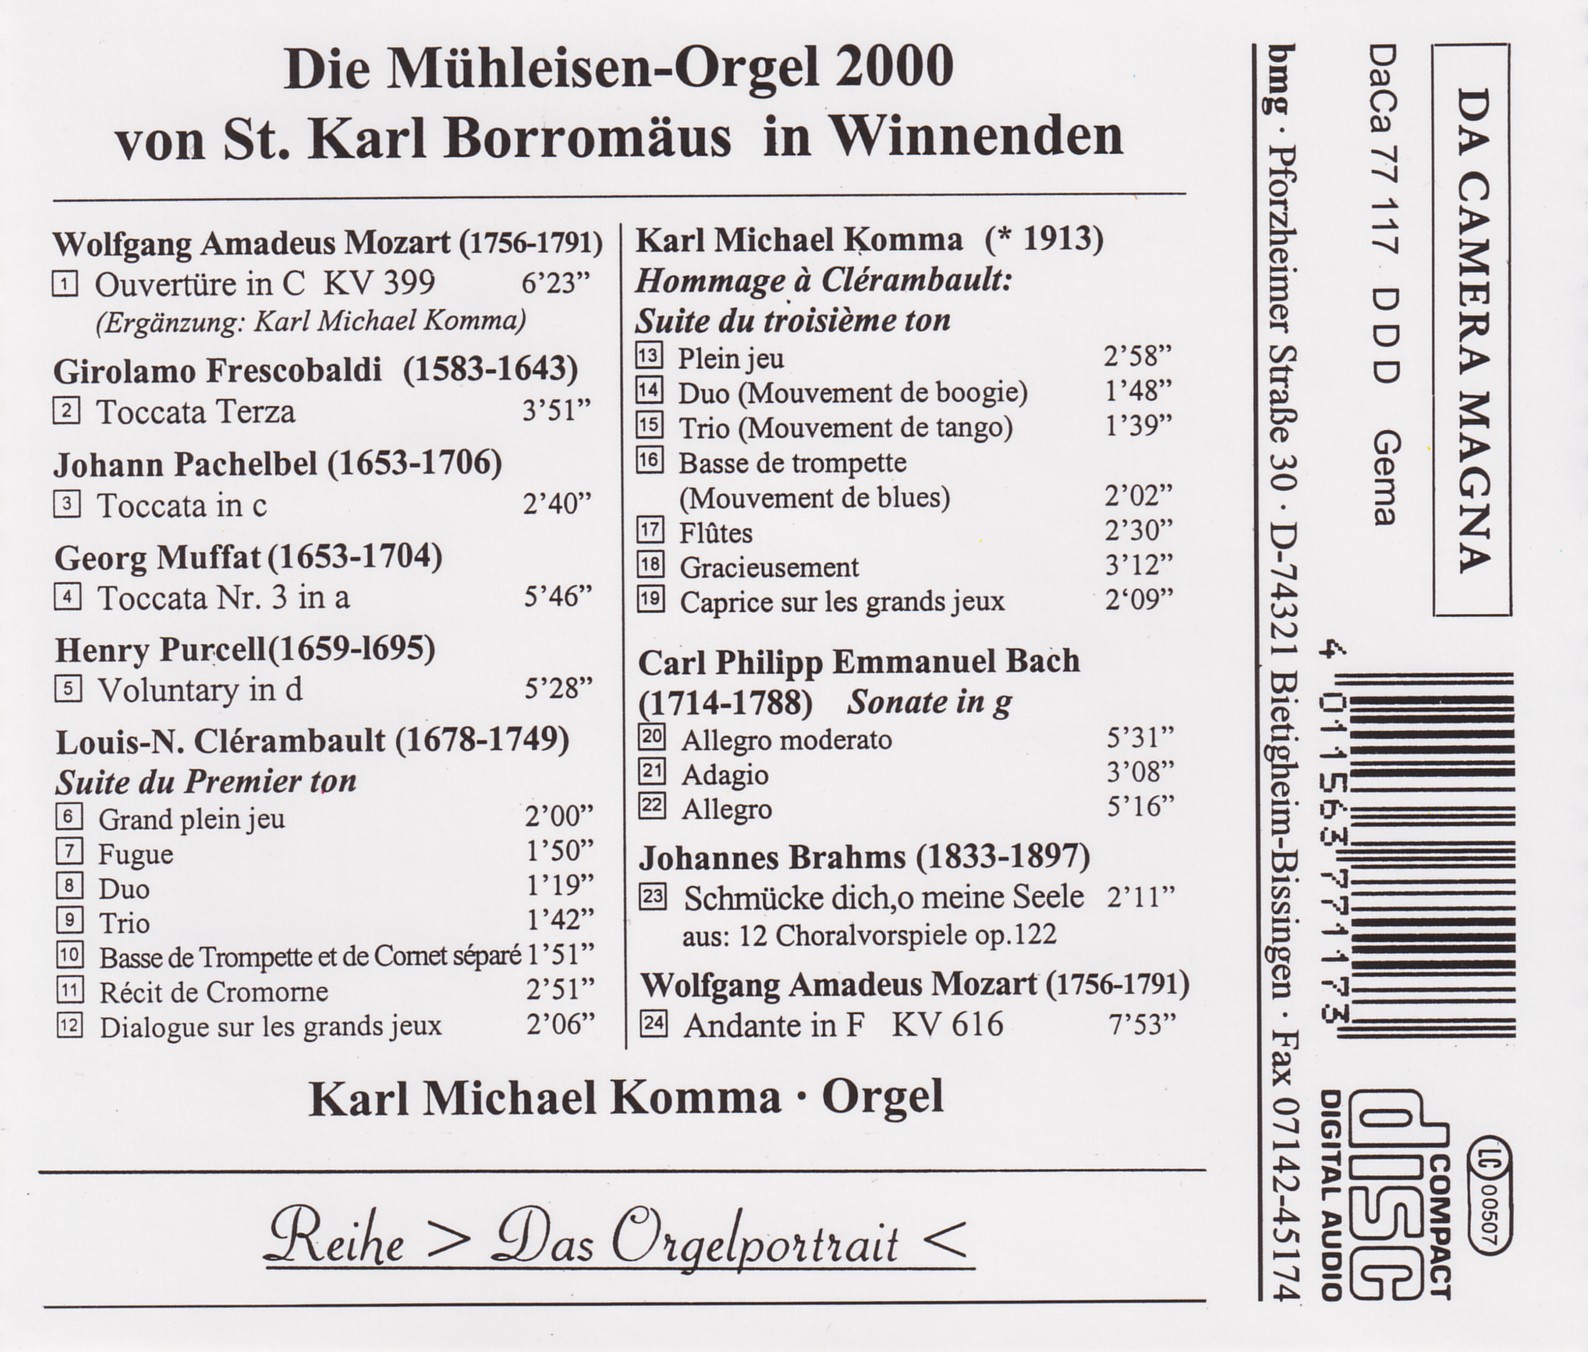 Die Mühleisen-Orgel Winnenden